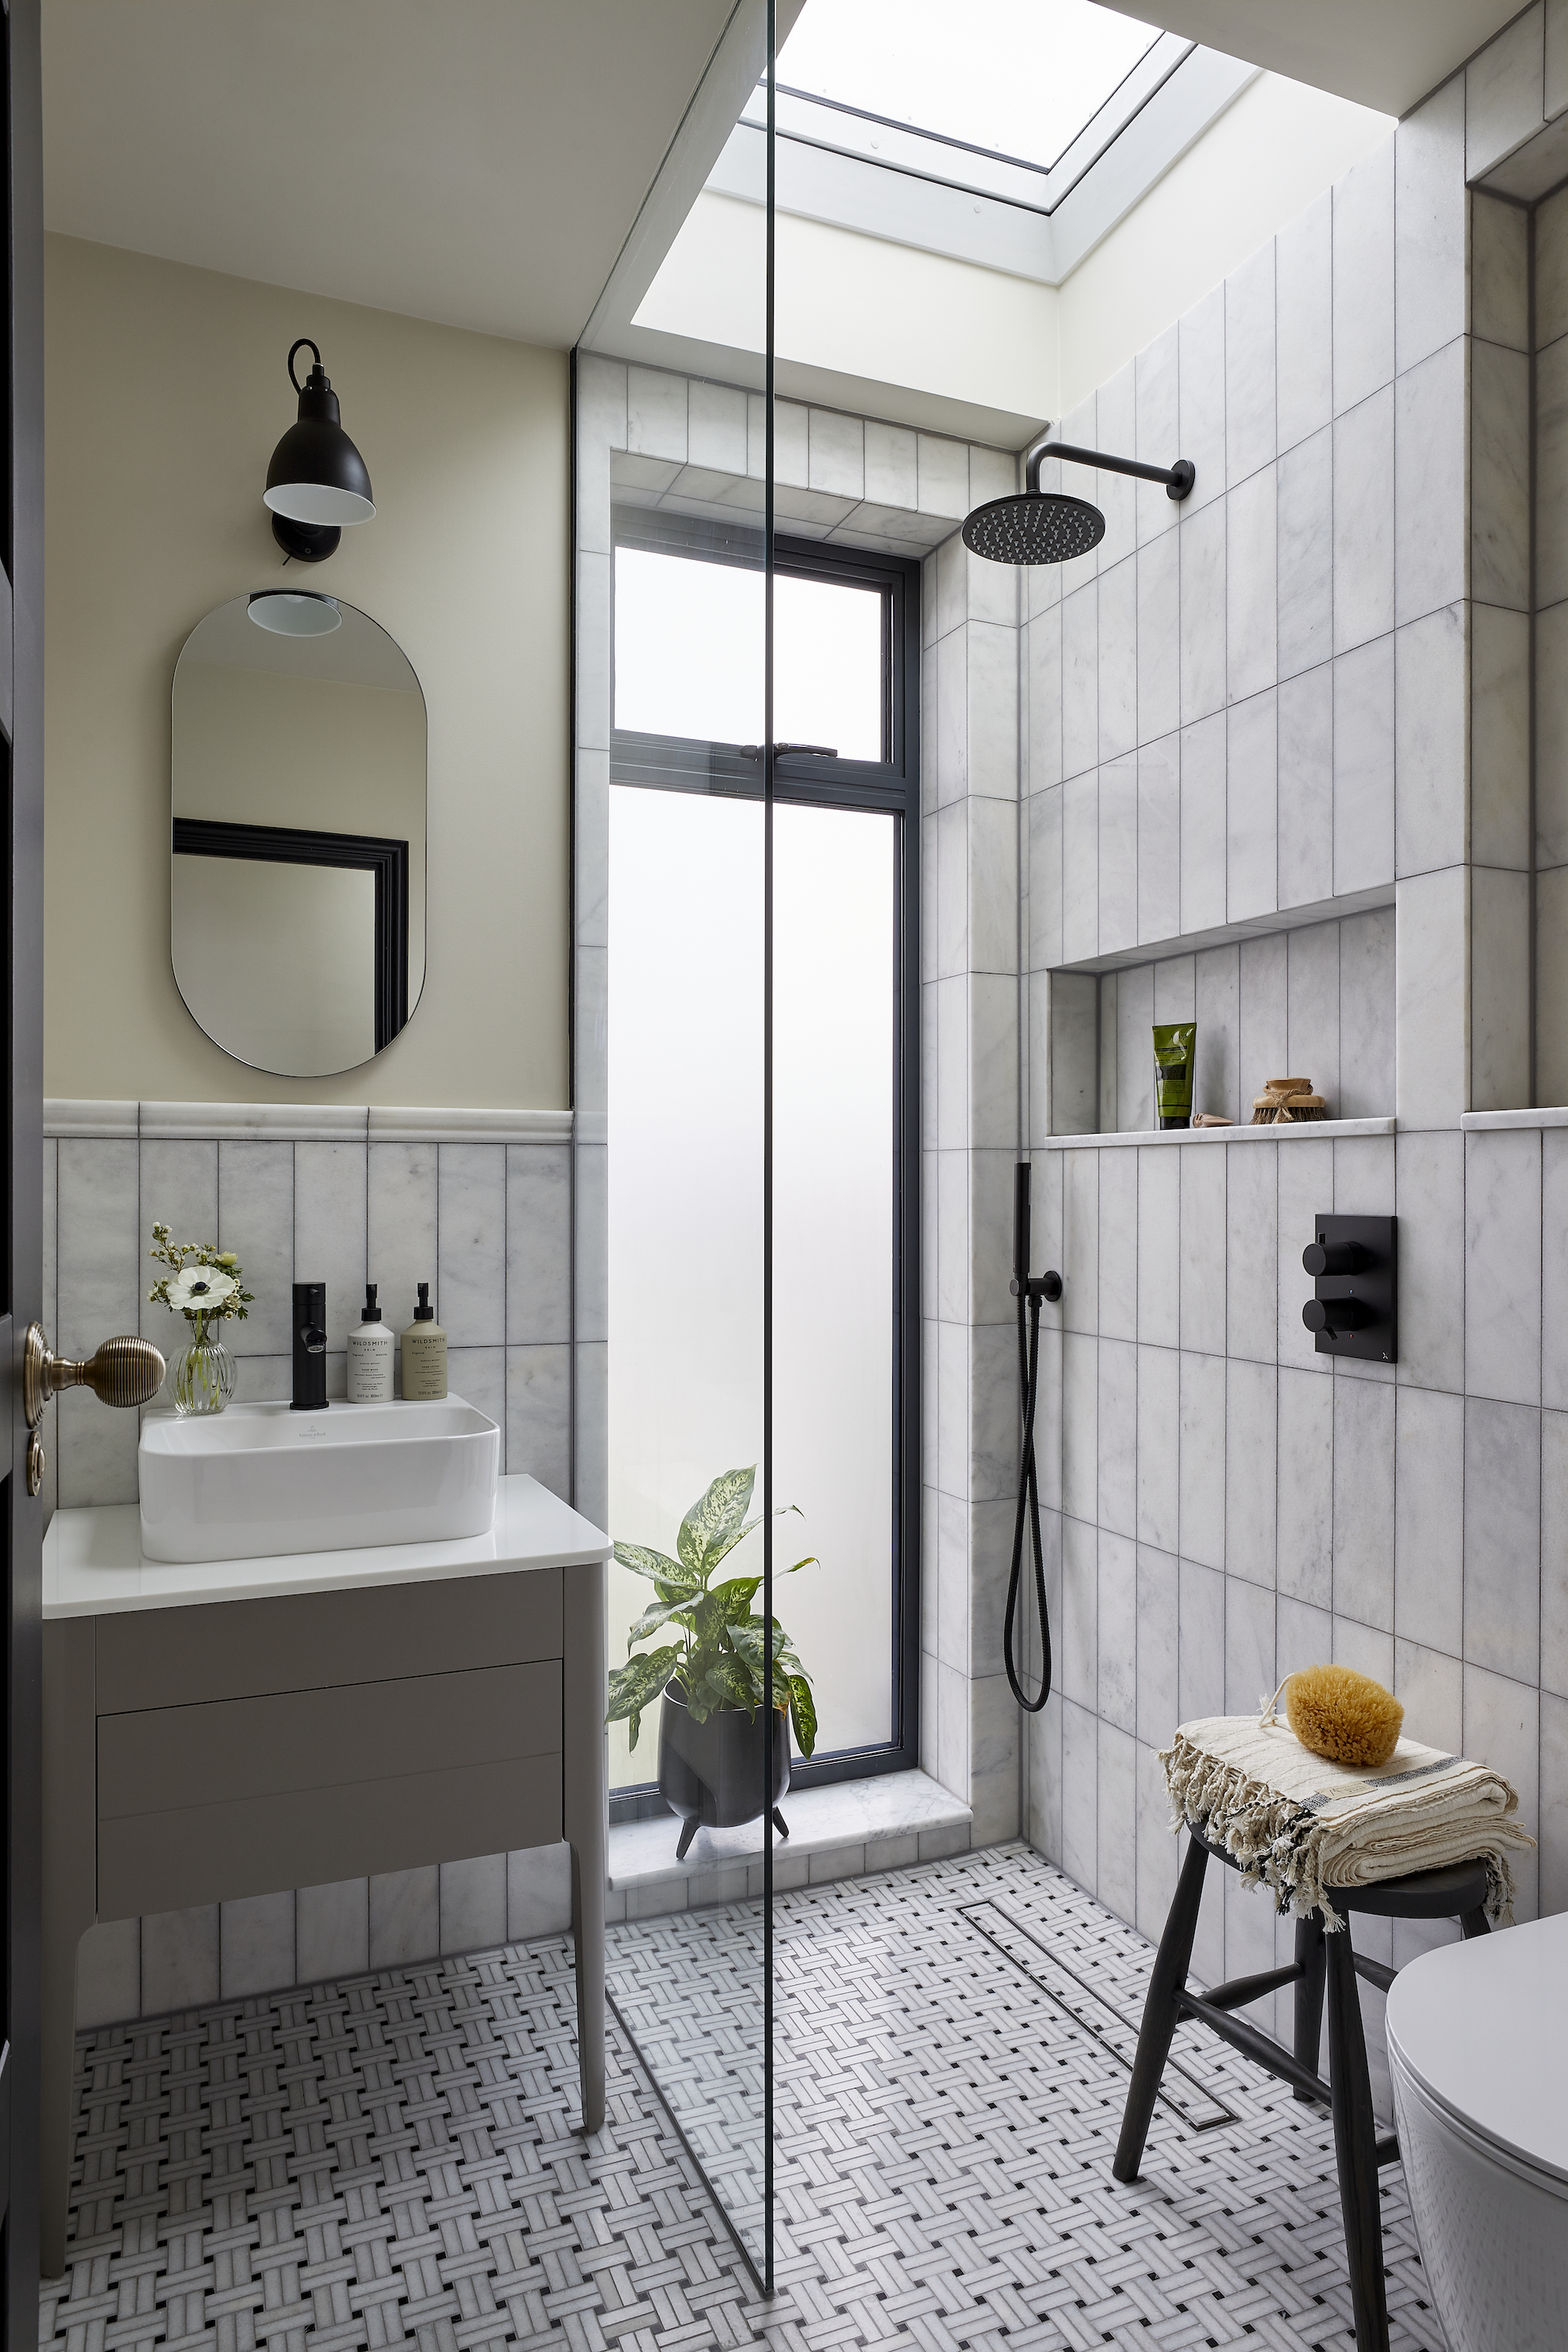 petite salle de bain avec douche, porte vitrée, sol et murs en marbre, petite vasque, luminaires et accessoires noirs